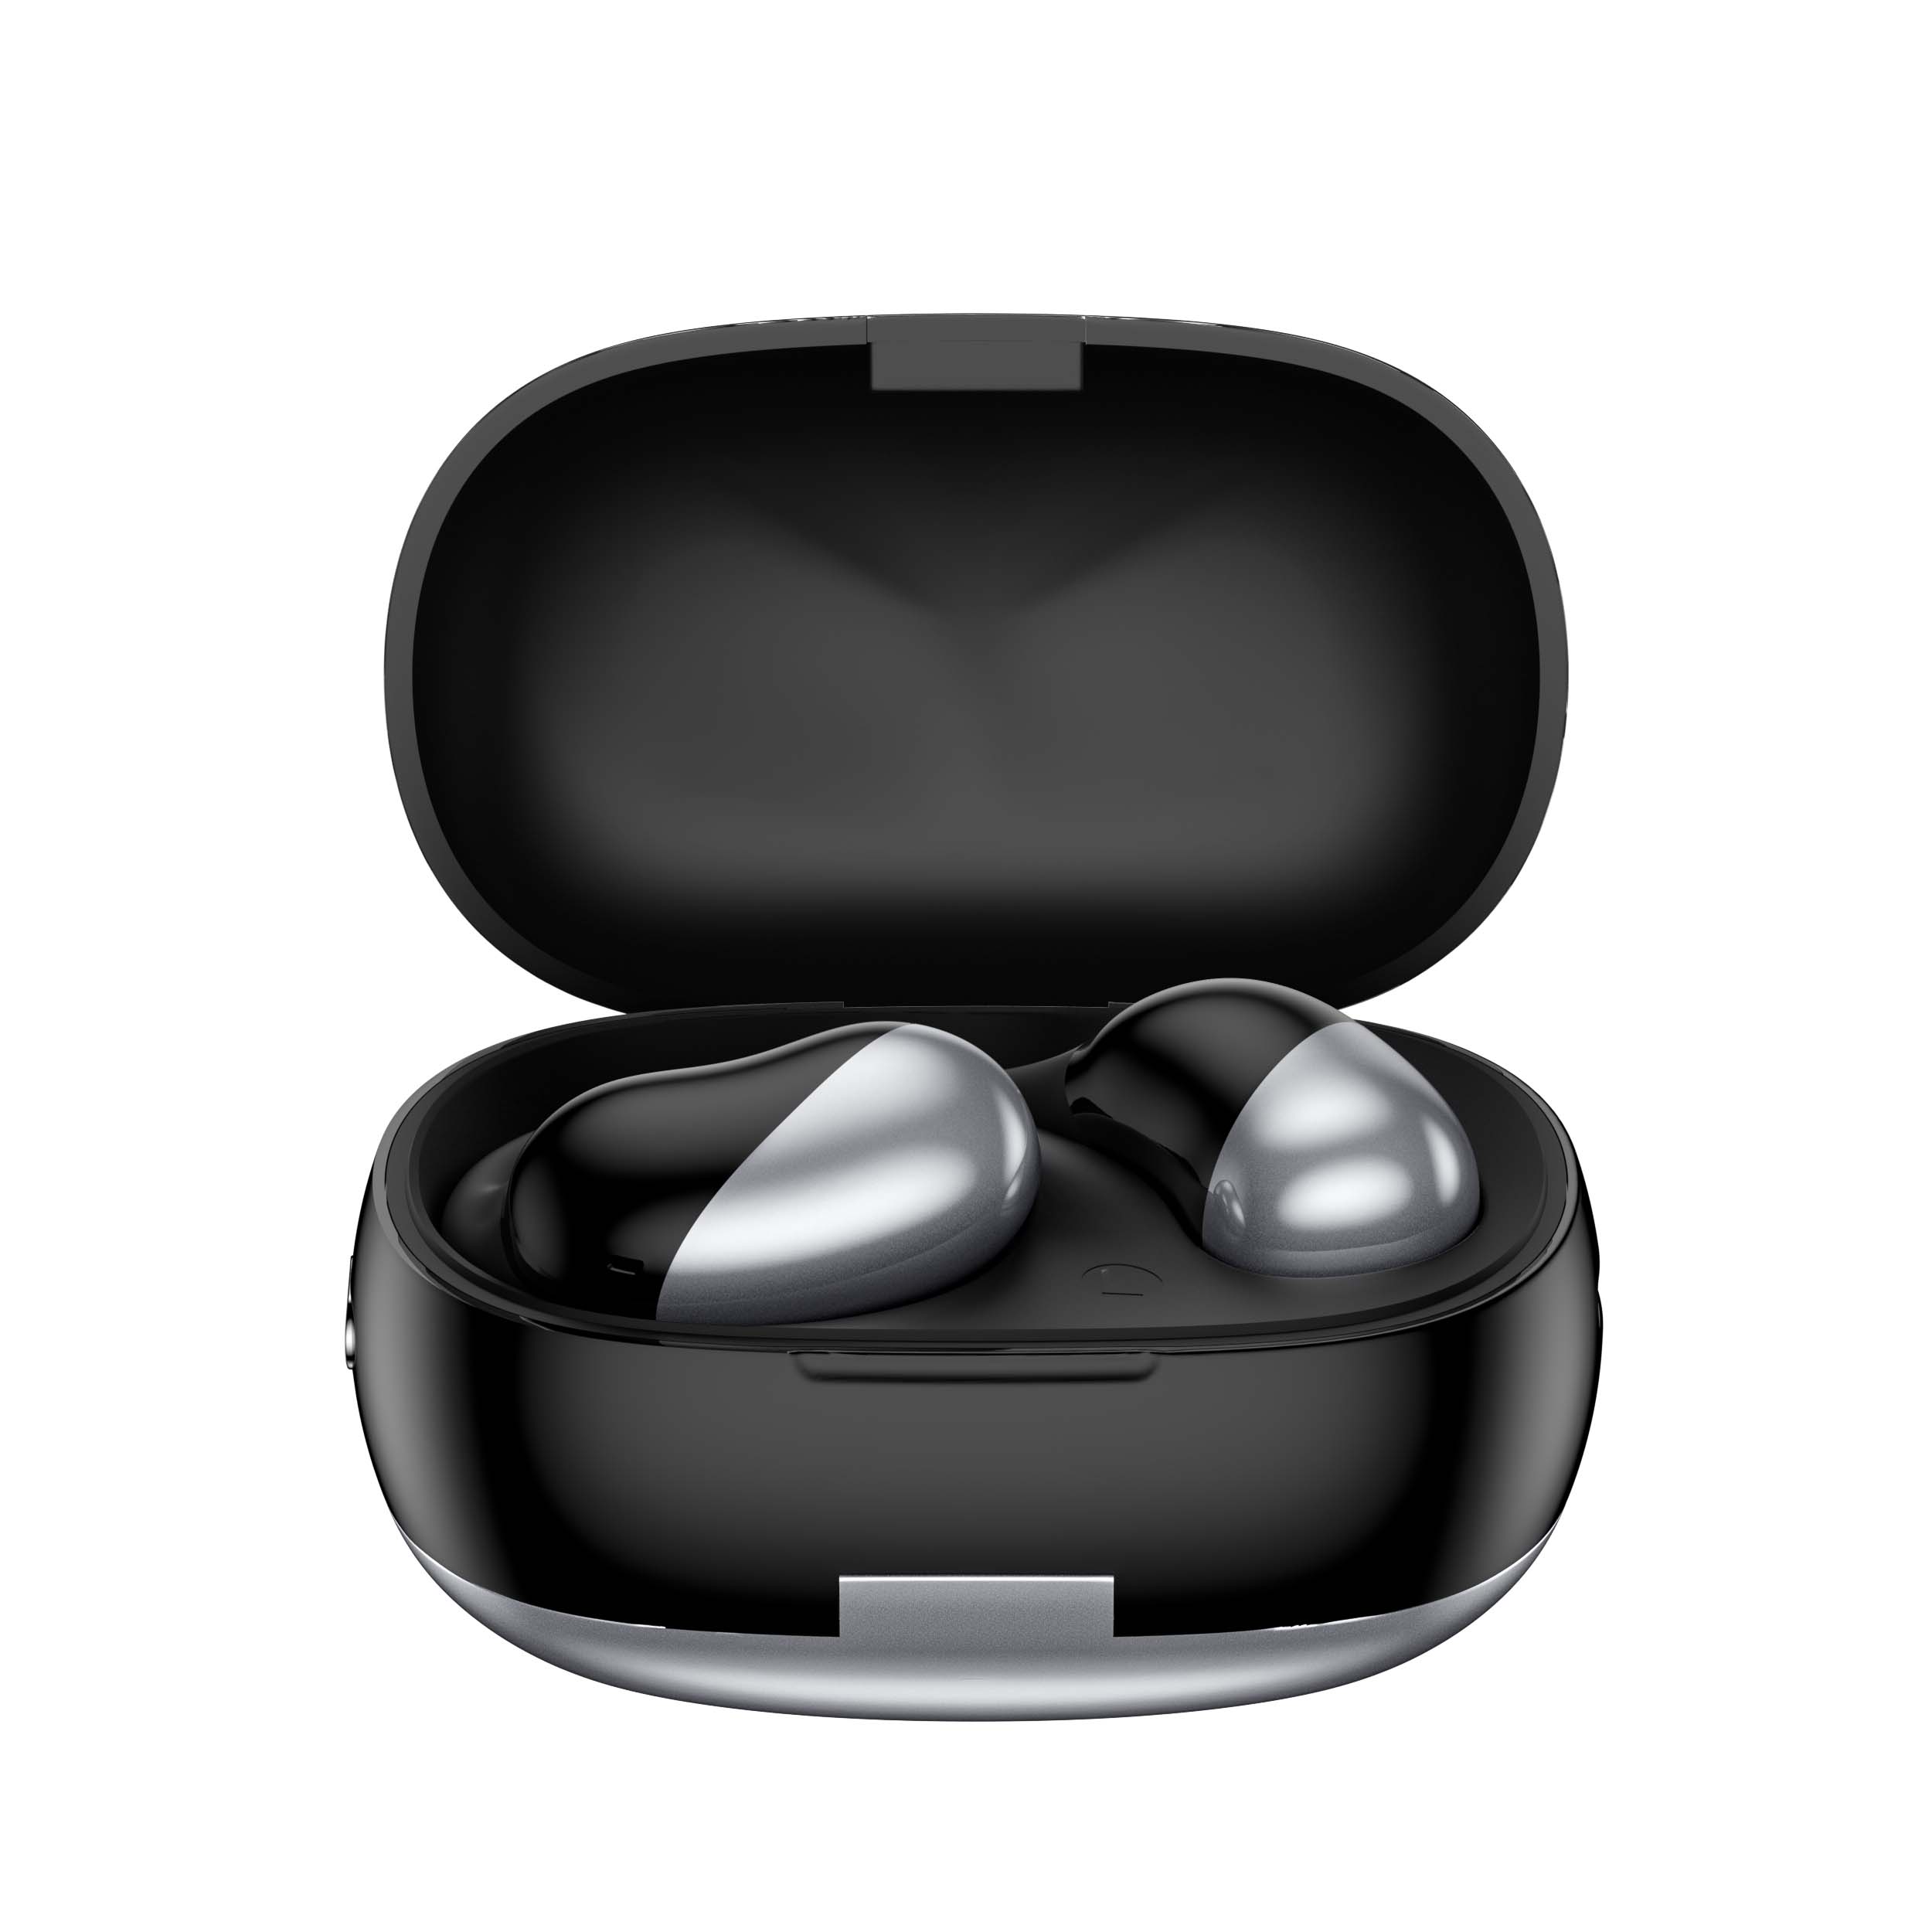 ใหม่ล่าสุด OWS Open Wireless Bluetooth Surround Stereo Conduction Dolby Headphone